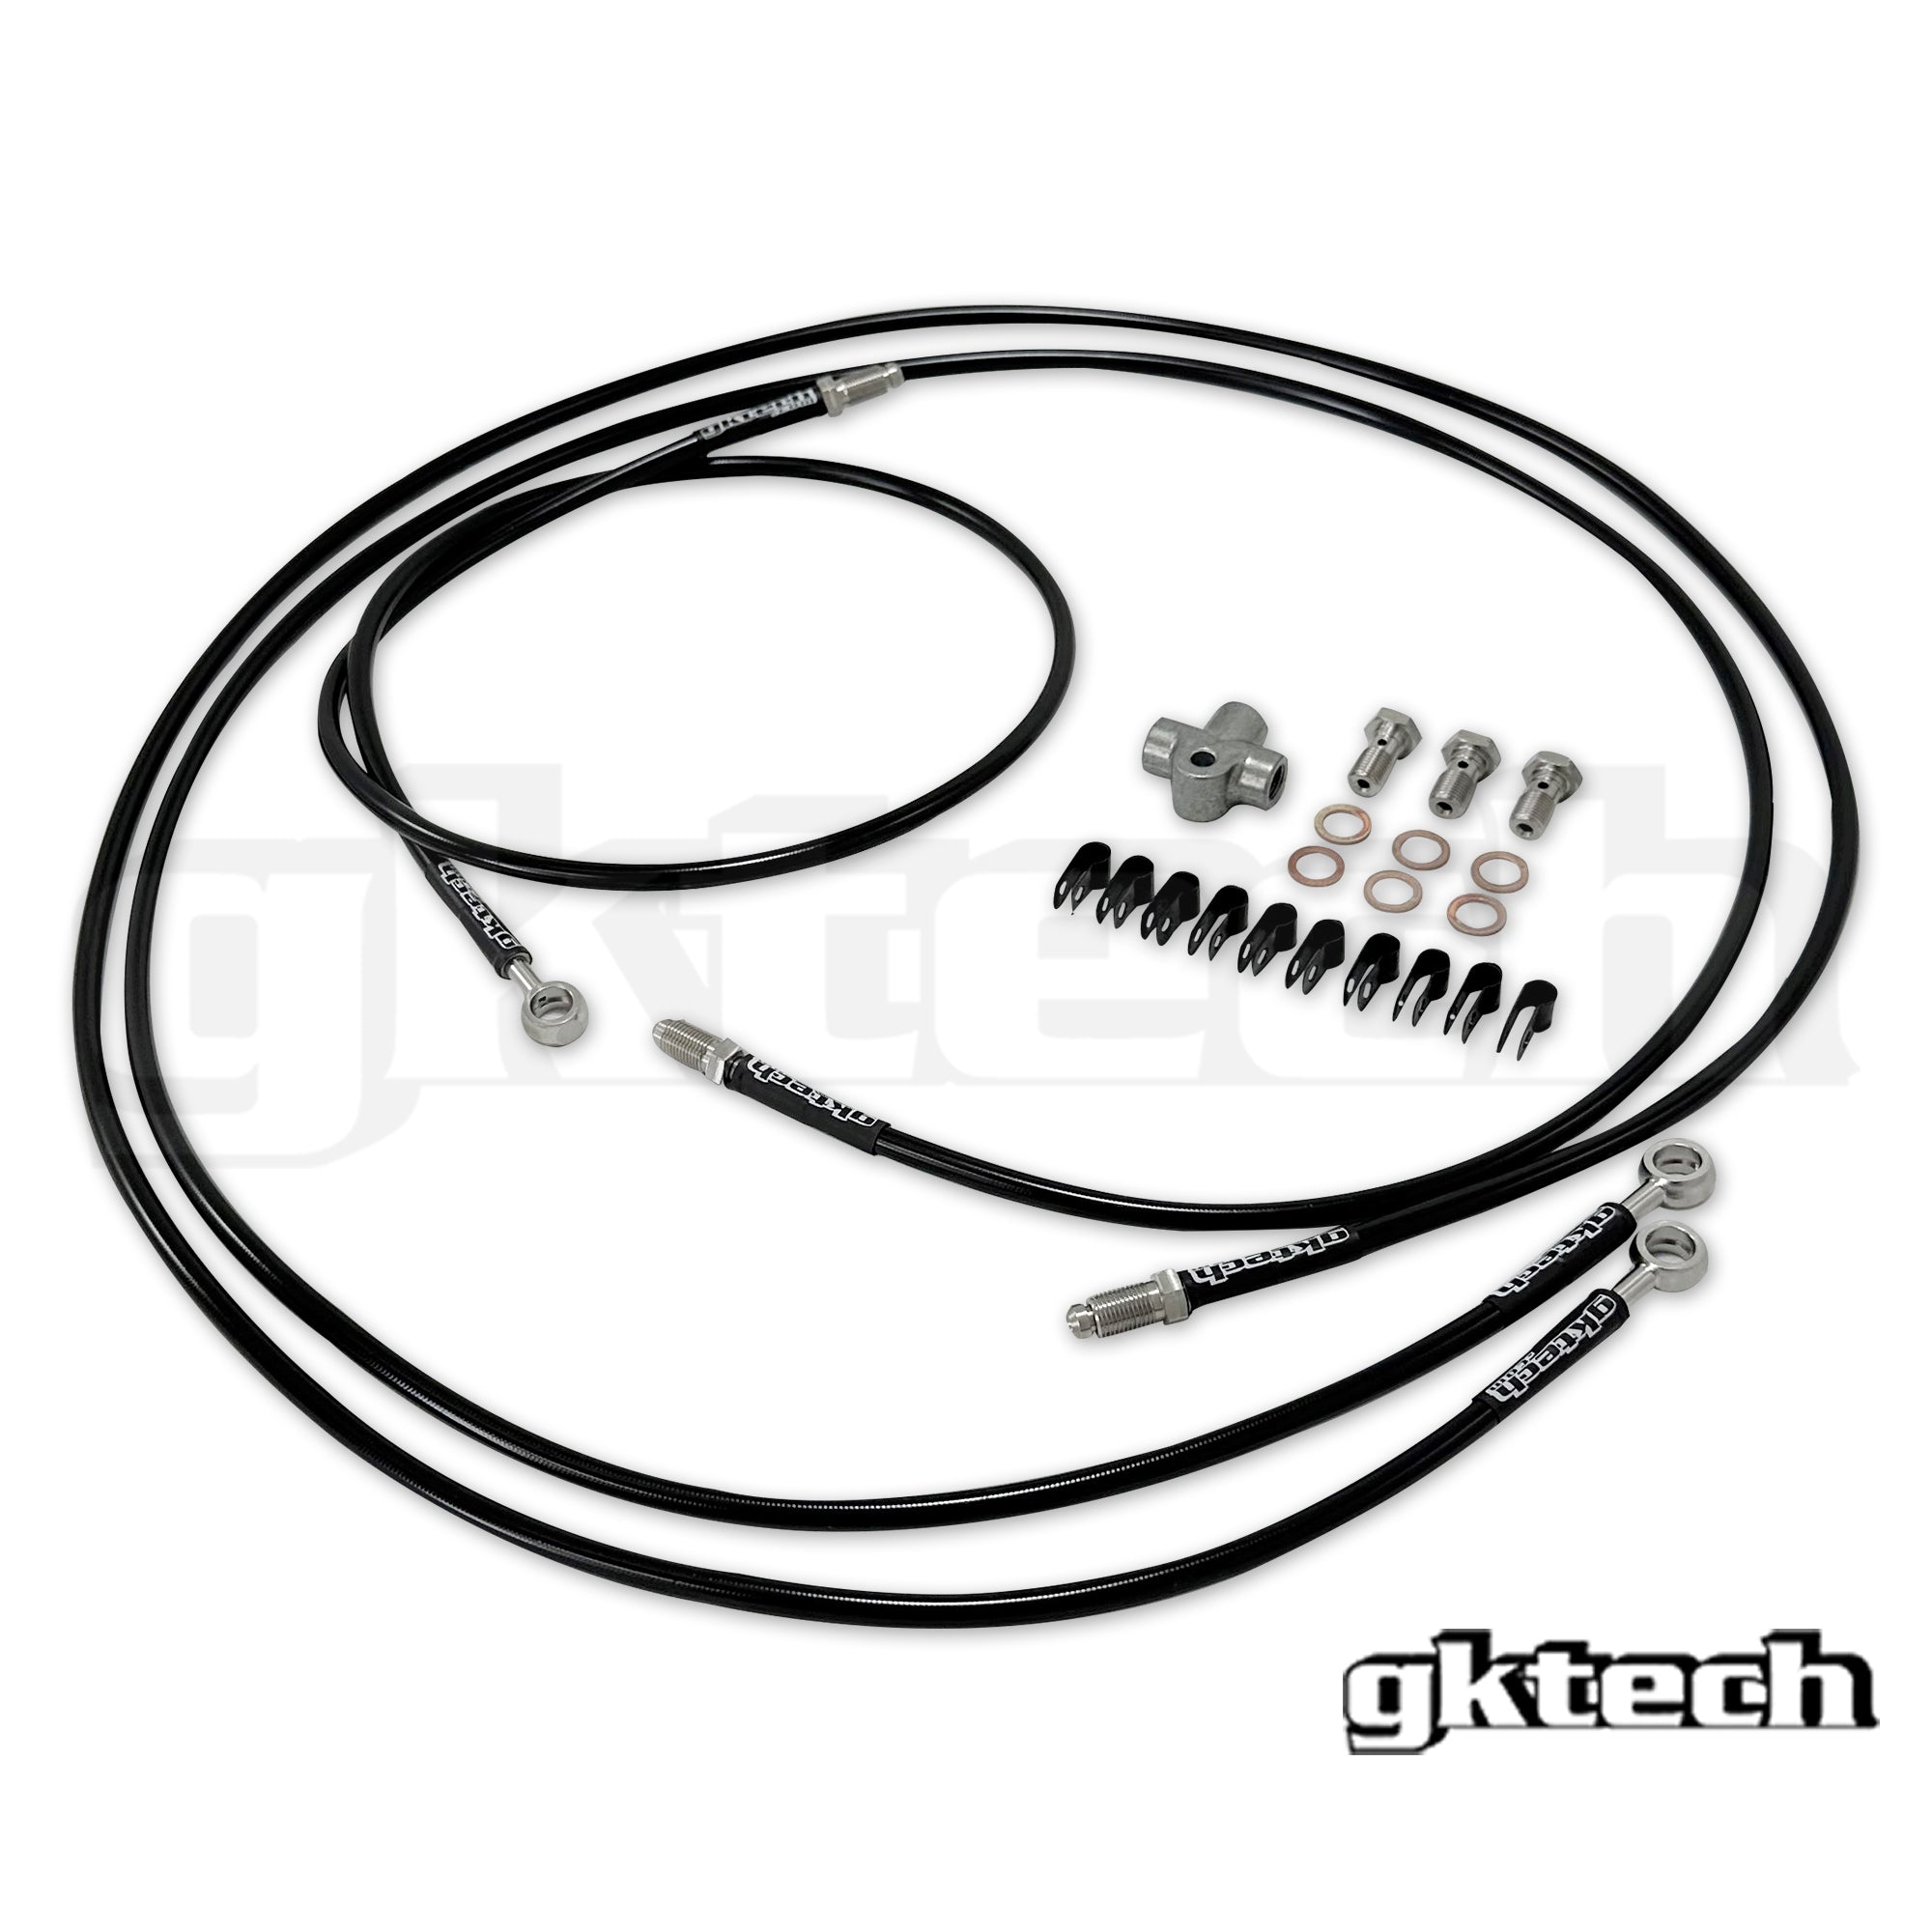 FR-S / GR86 / BRZ e-brake braided brake line kit